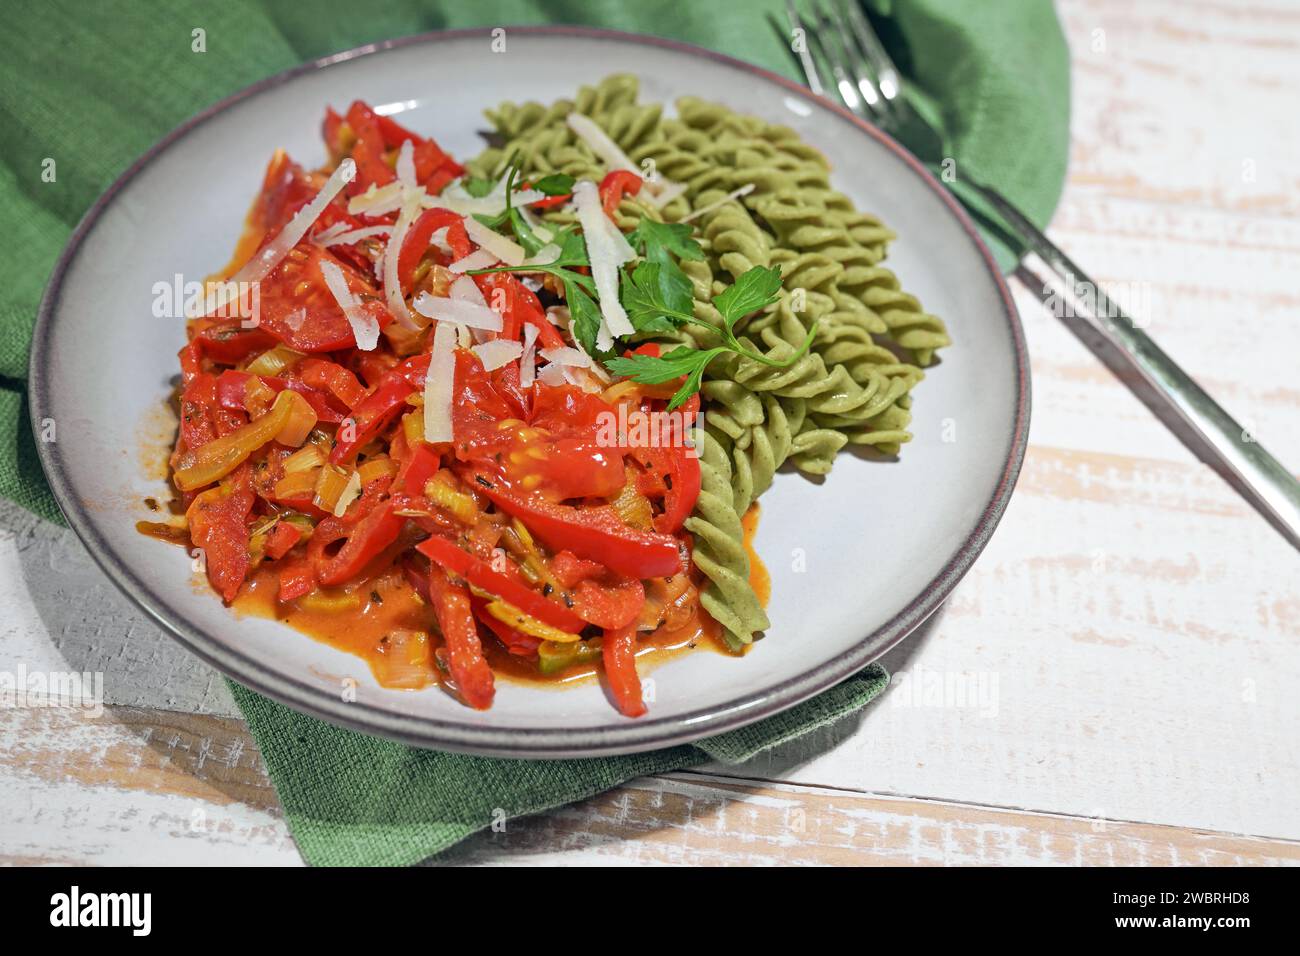 Repas végétalien sain de nouilles à base de légumineuses vertes avec ragoût de légumes rouges de poivron et de tomate, riche en protéines, vitamines, fibres alimentaires et Banque D'Images